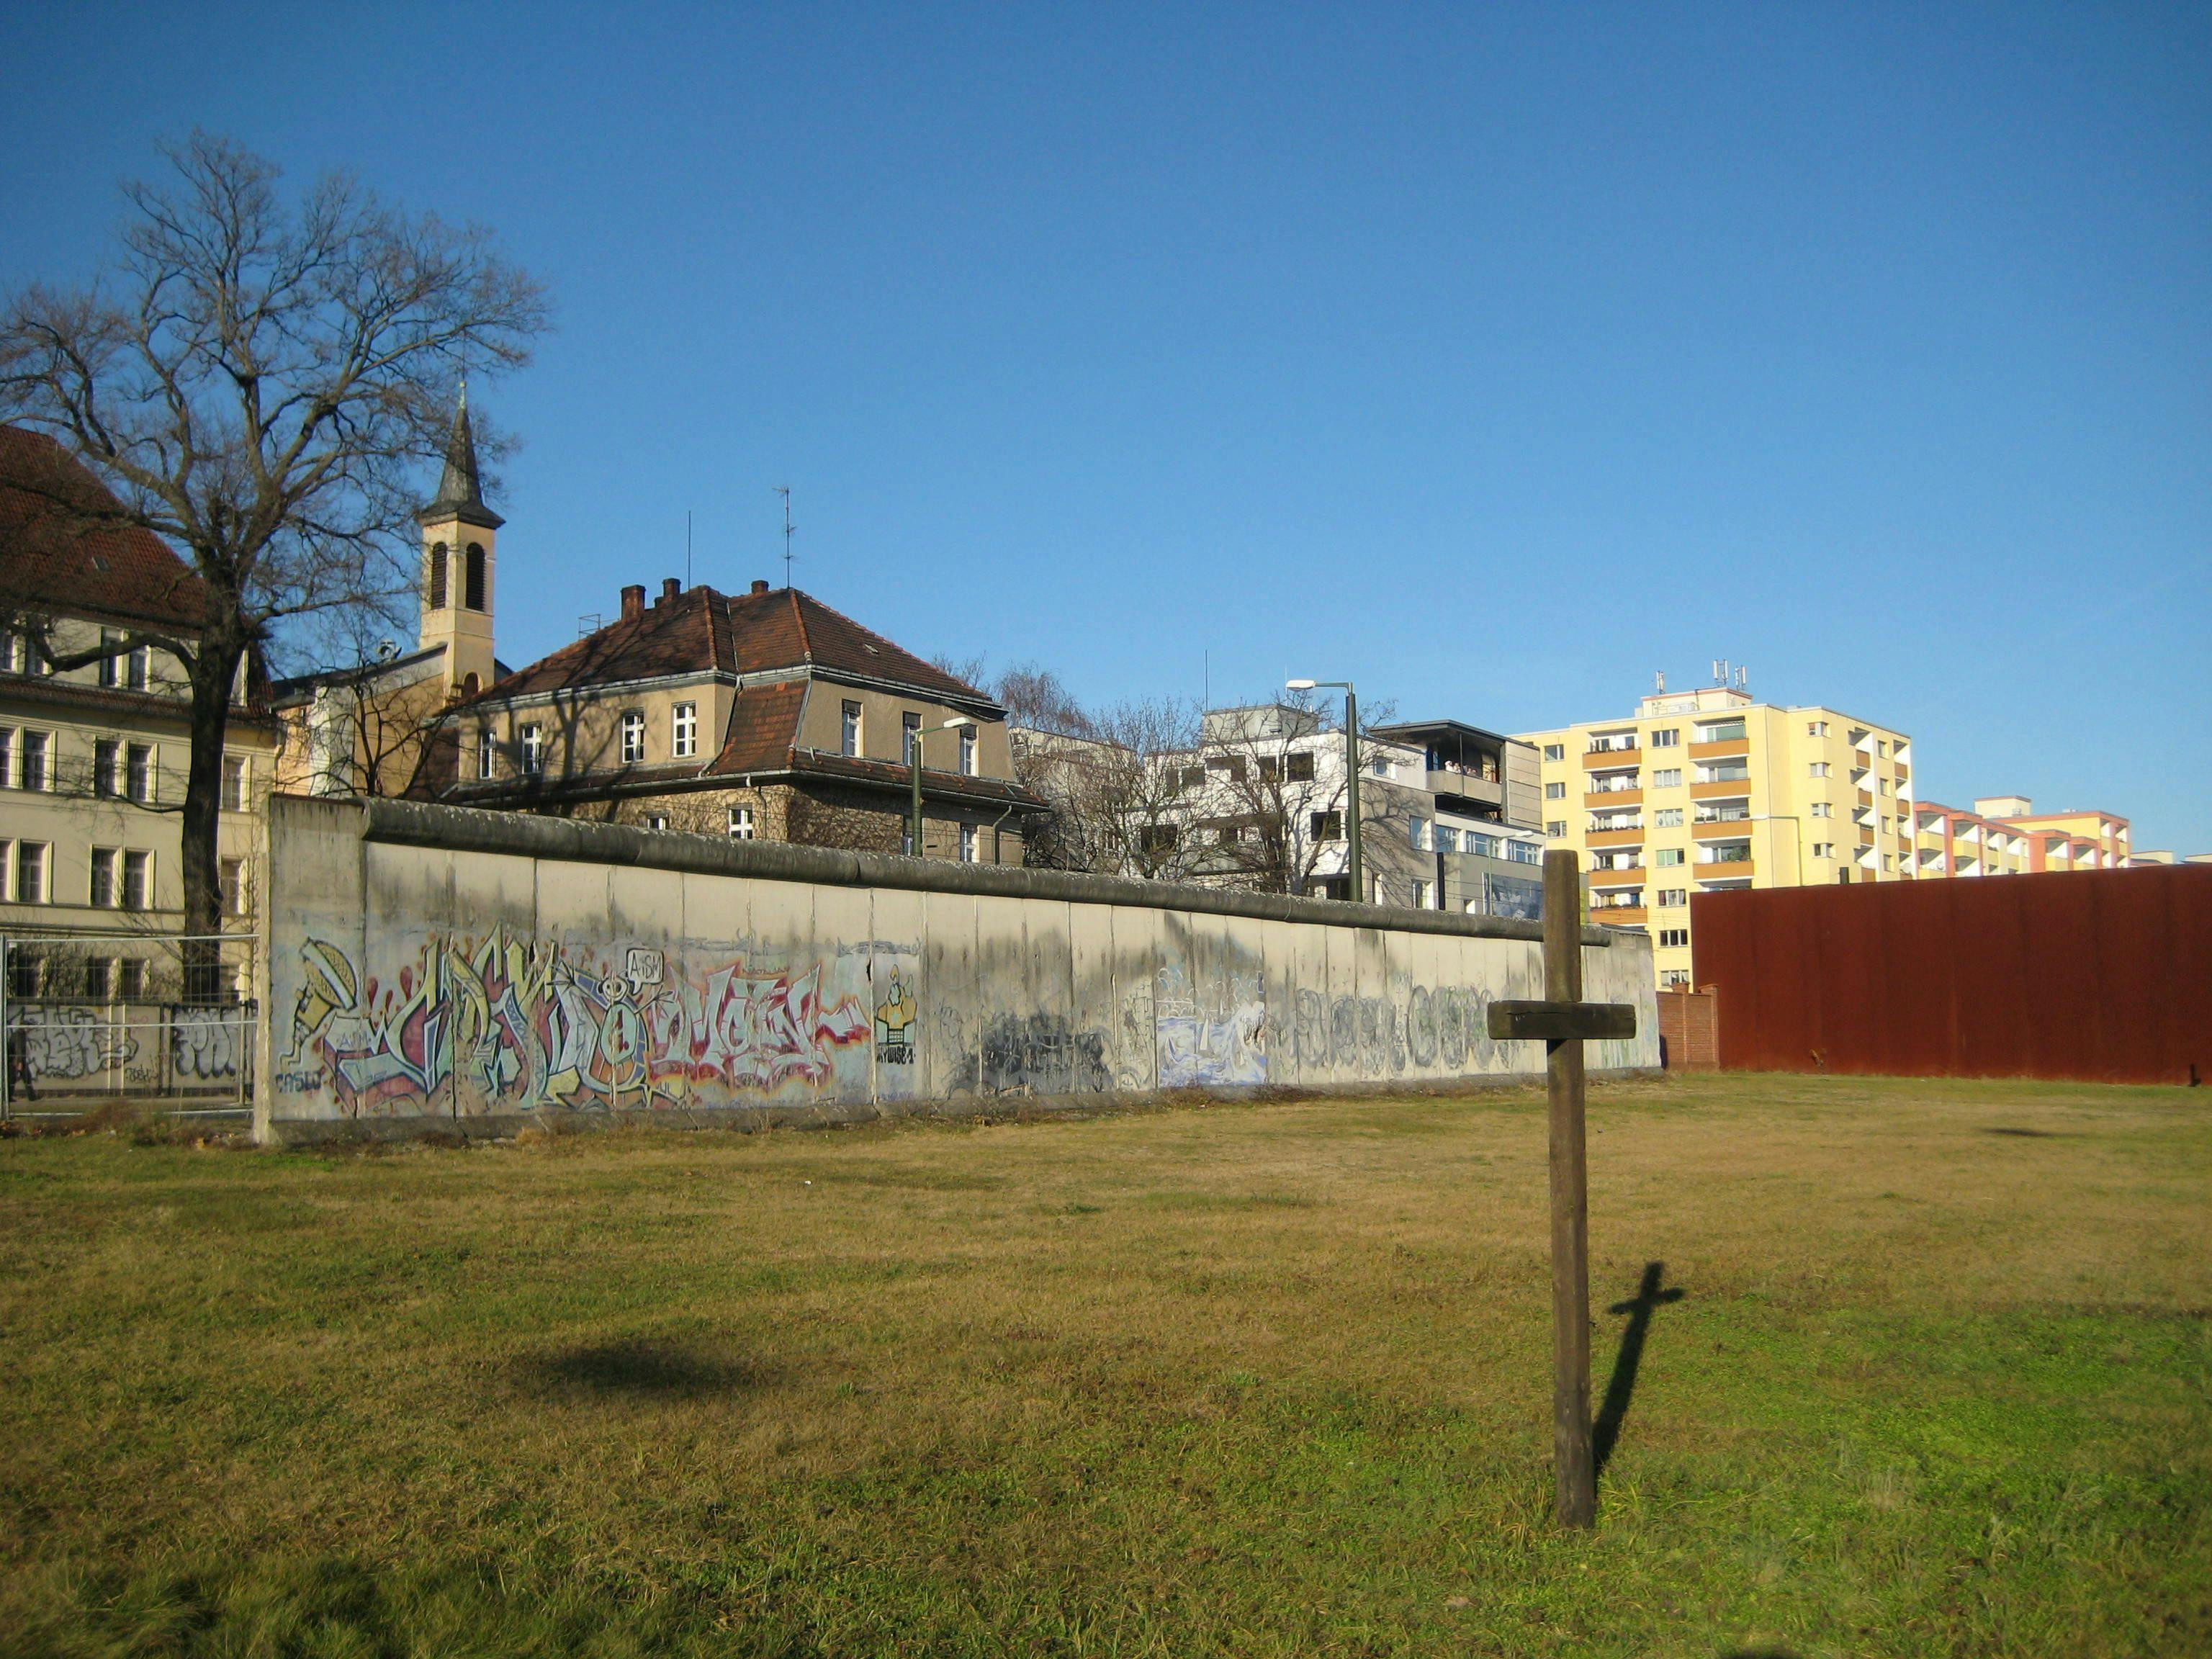 Secretos del Muro de Berlín: un recorrido a pie con audio autoguiado